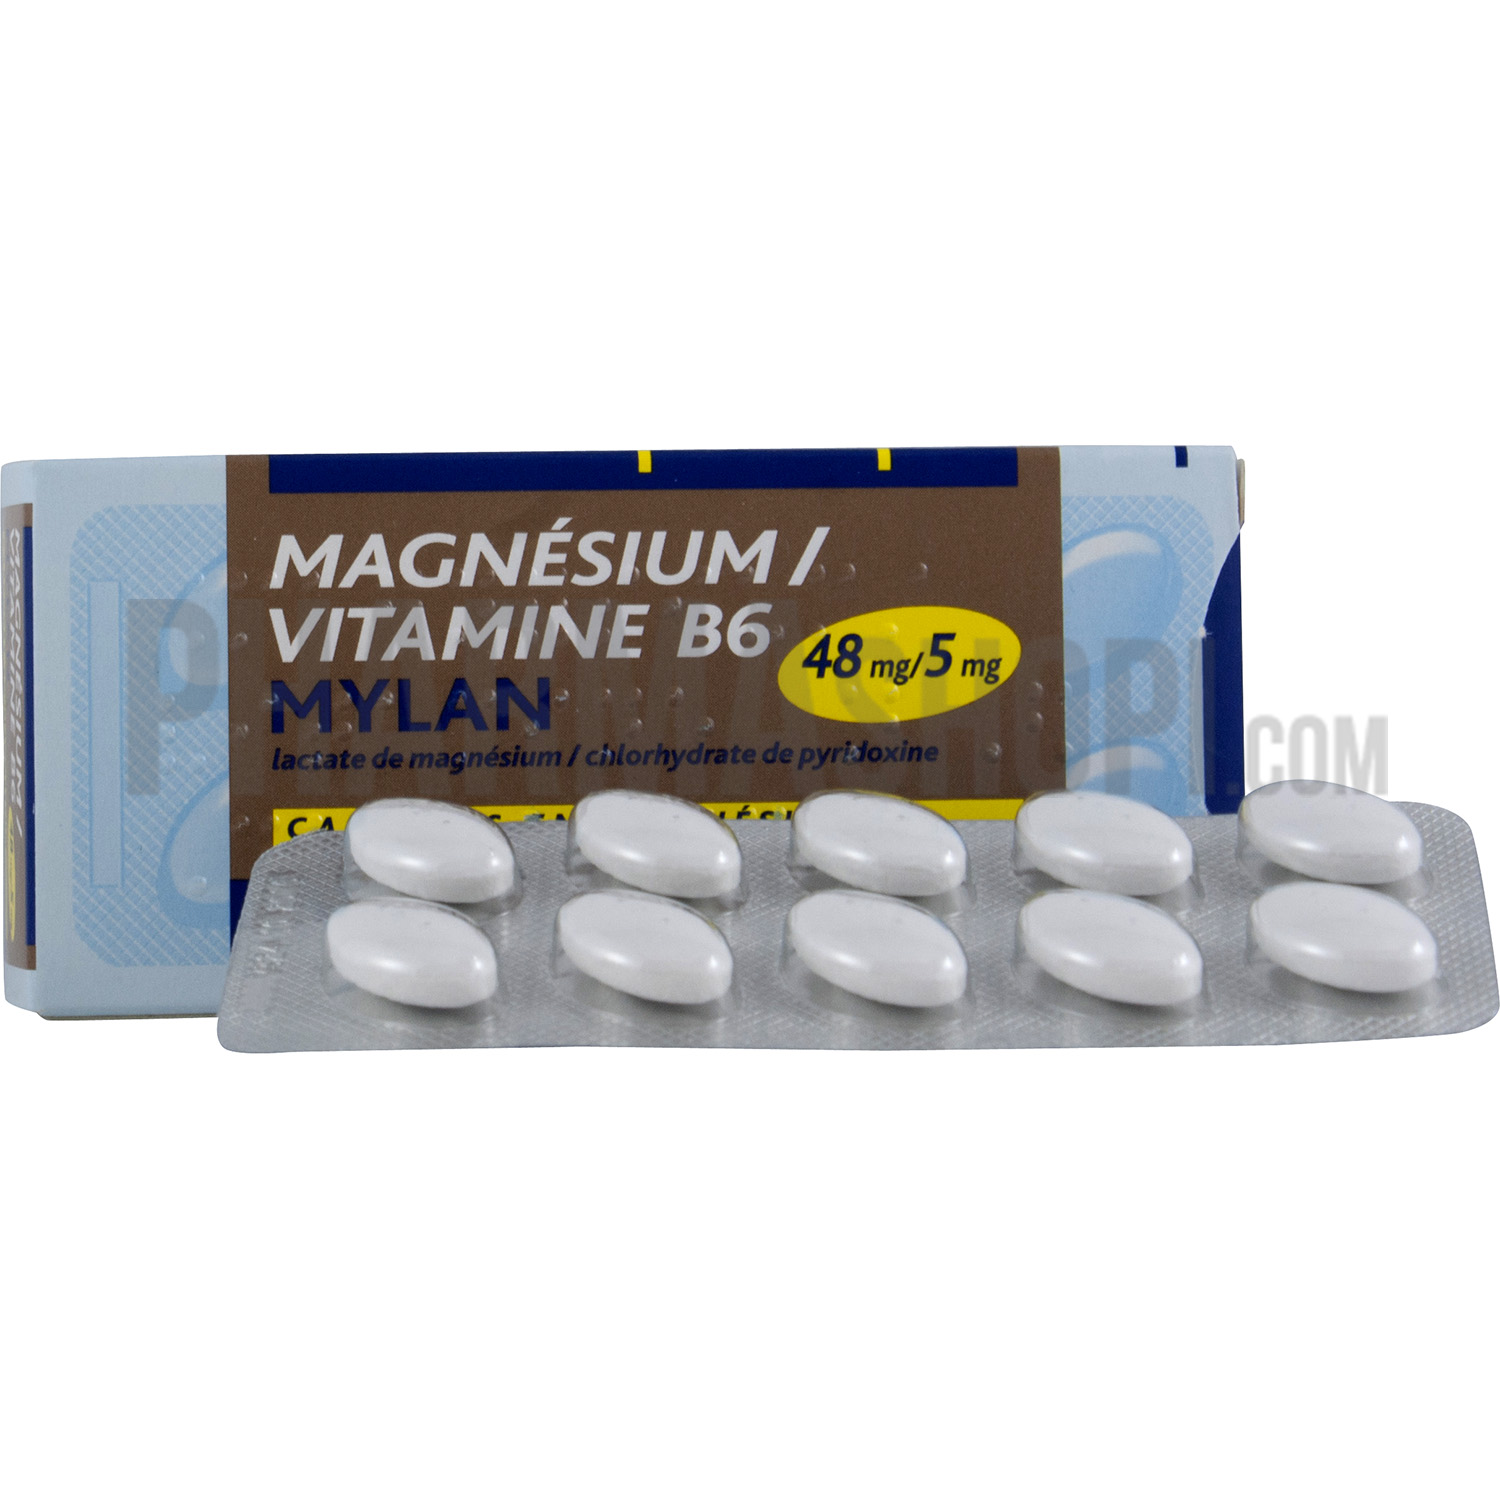 Magnesium-vitamine-b6 mylan tab